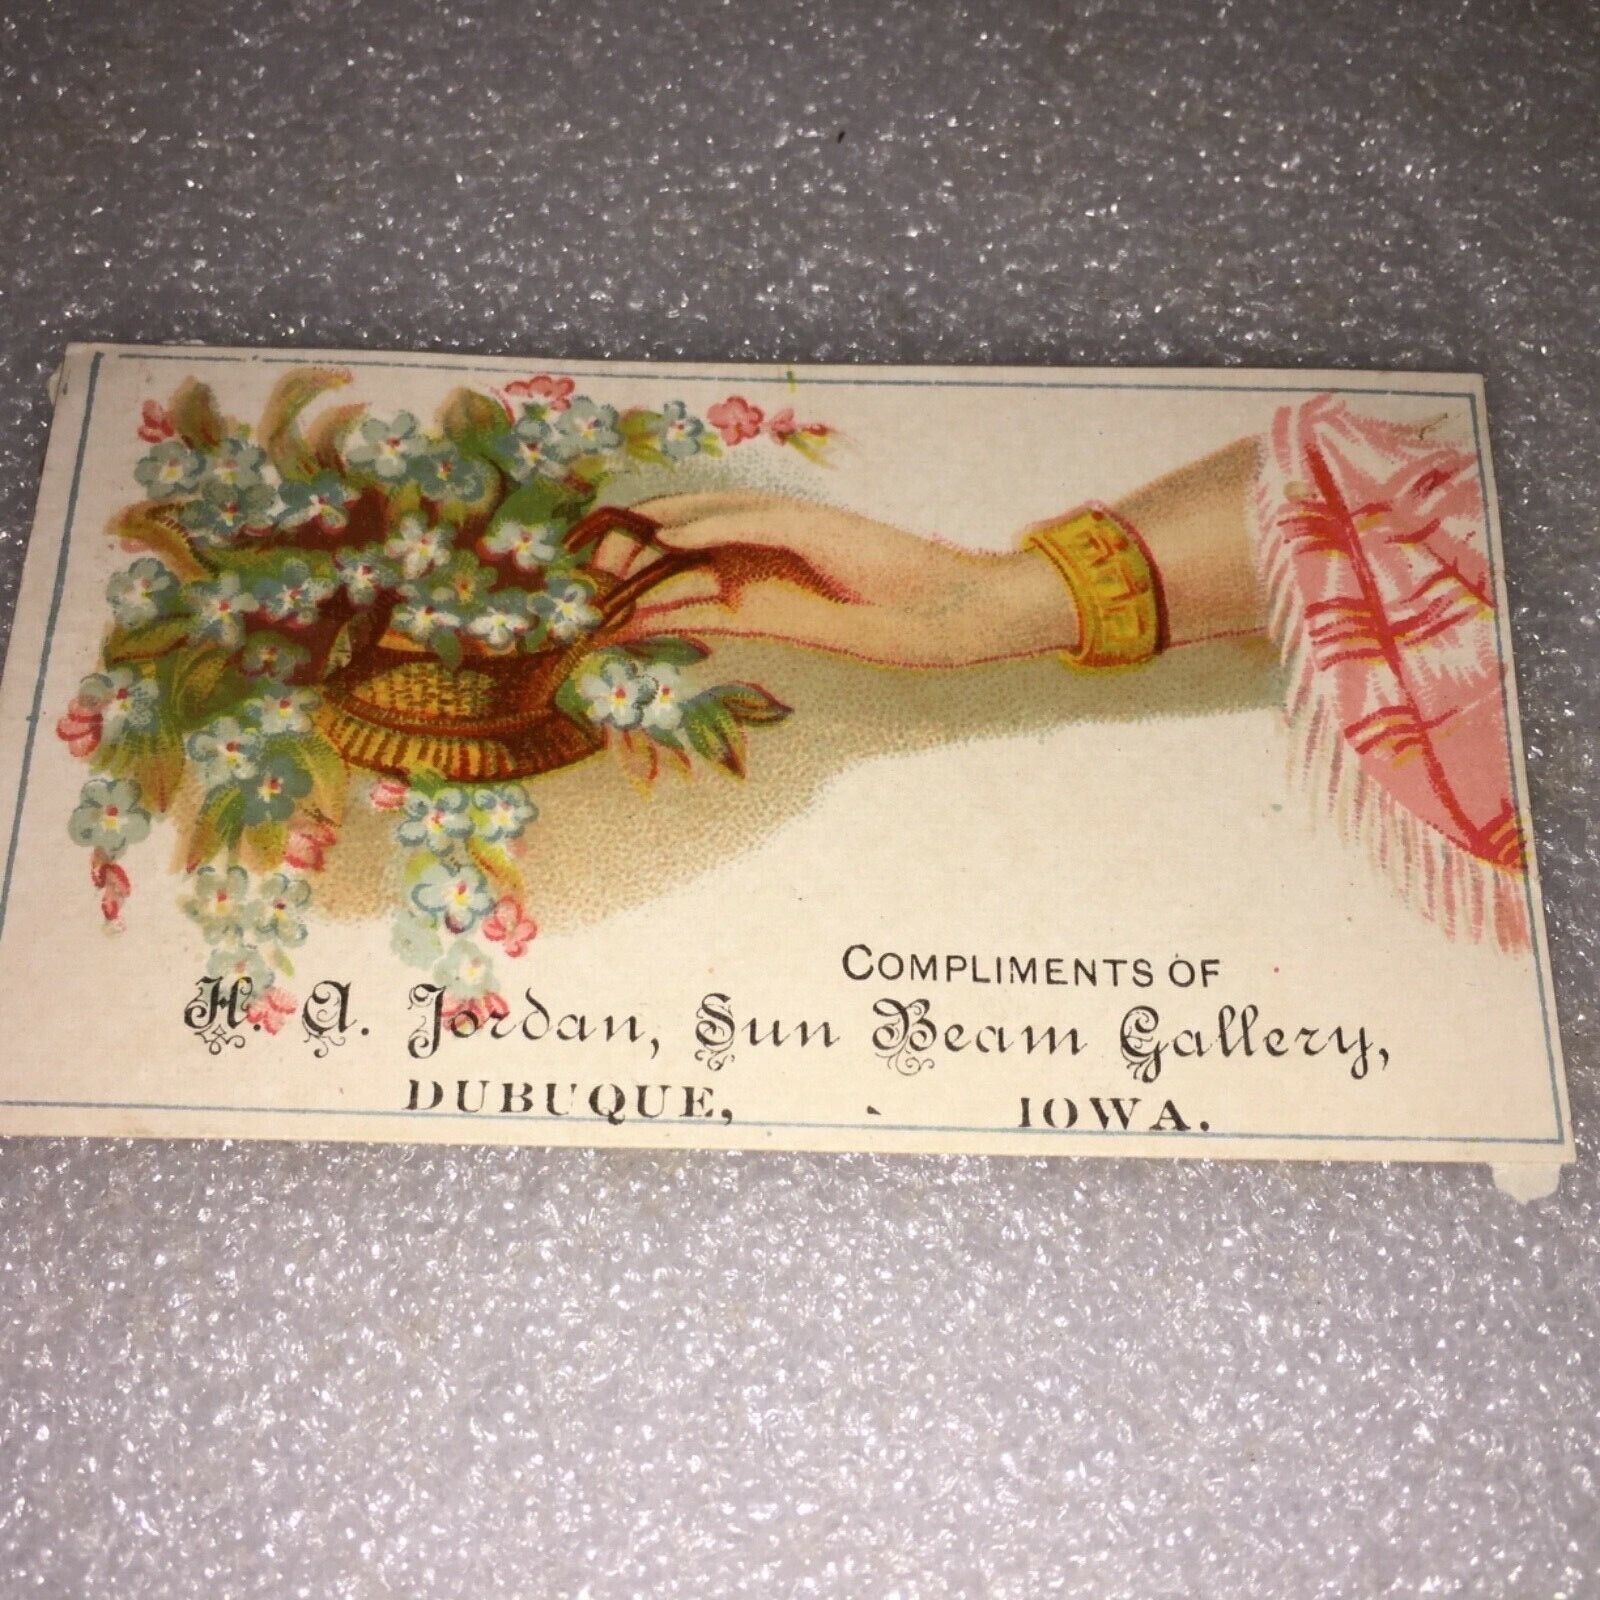 VINTAGE H.A. JORDAN SUN BEAM GALLERY CALLING CARD, DUBUQUE,IOWA